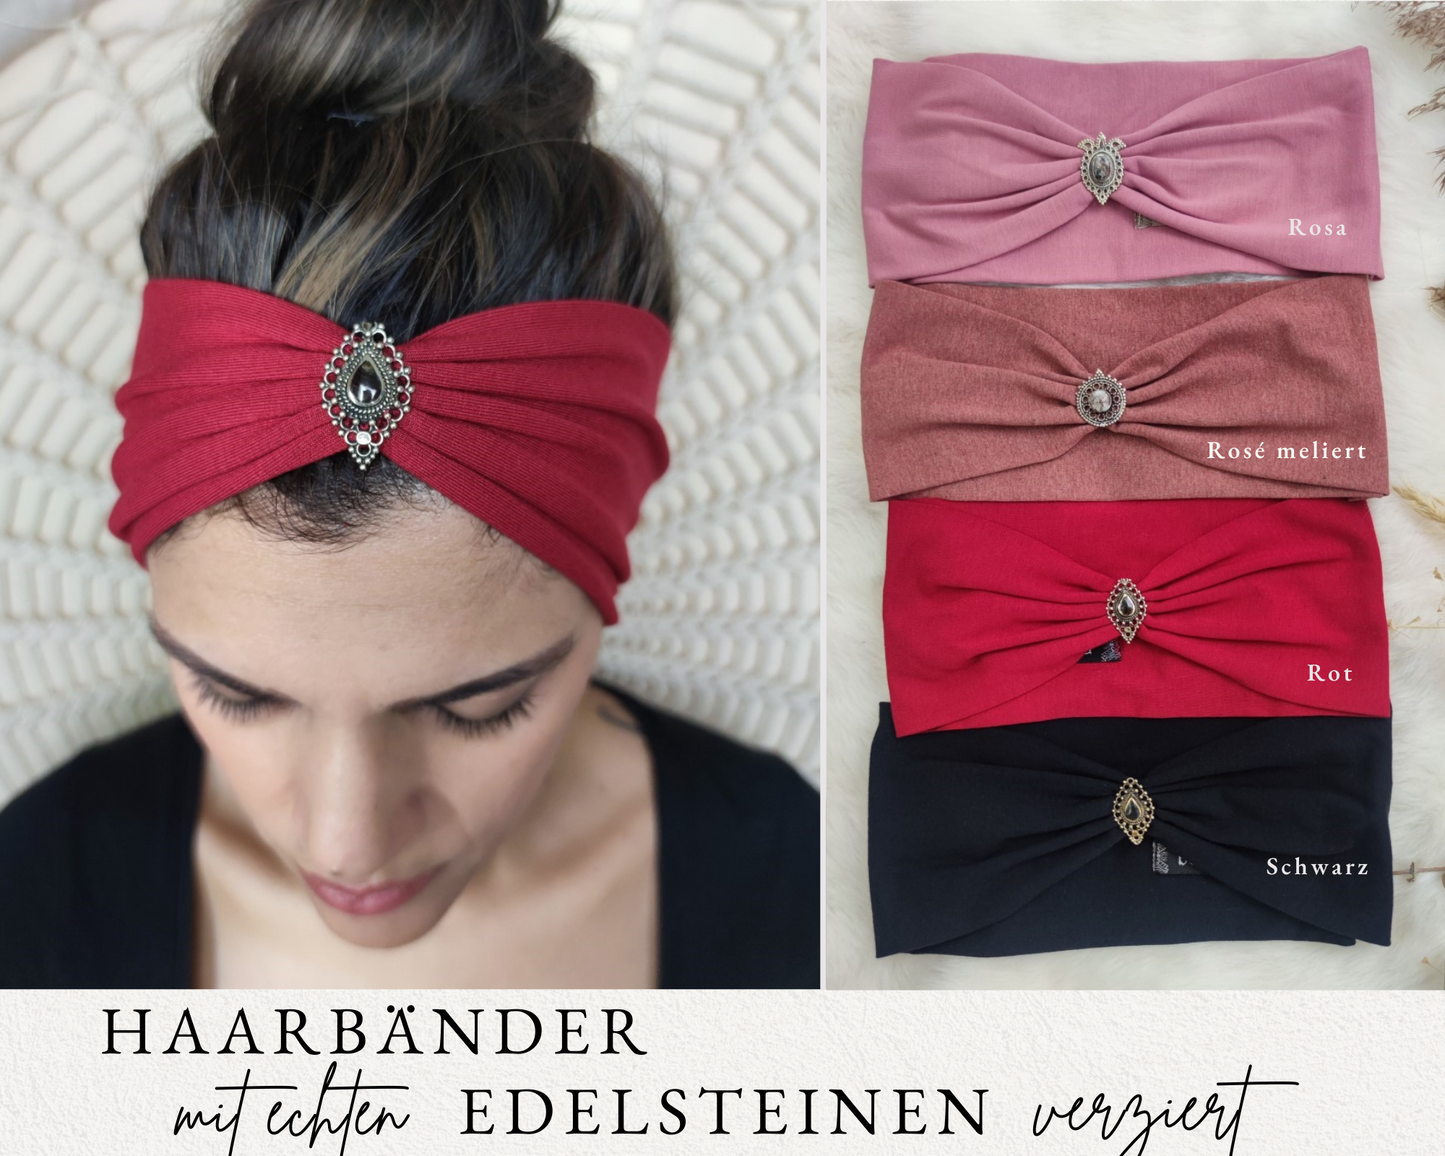 Boho Haarbänder Jersey mit Edelsteinen verziert in 5 Farben in rosa, rot, schwarz Tönen